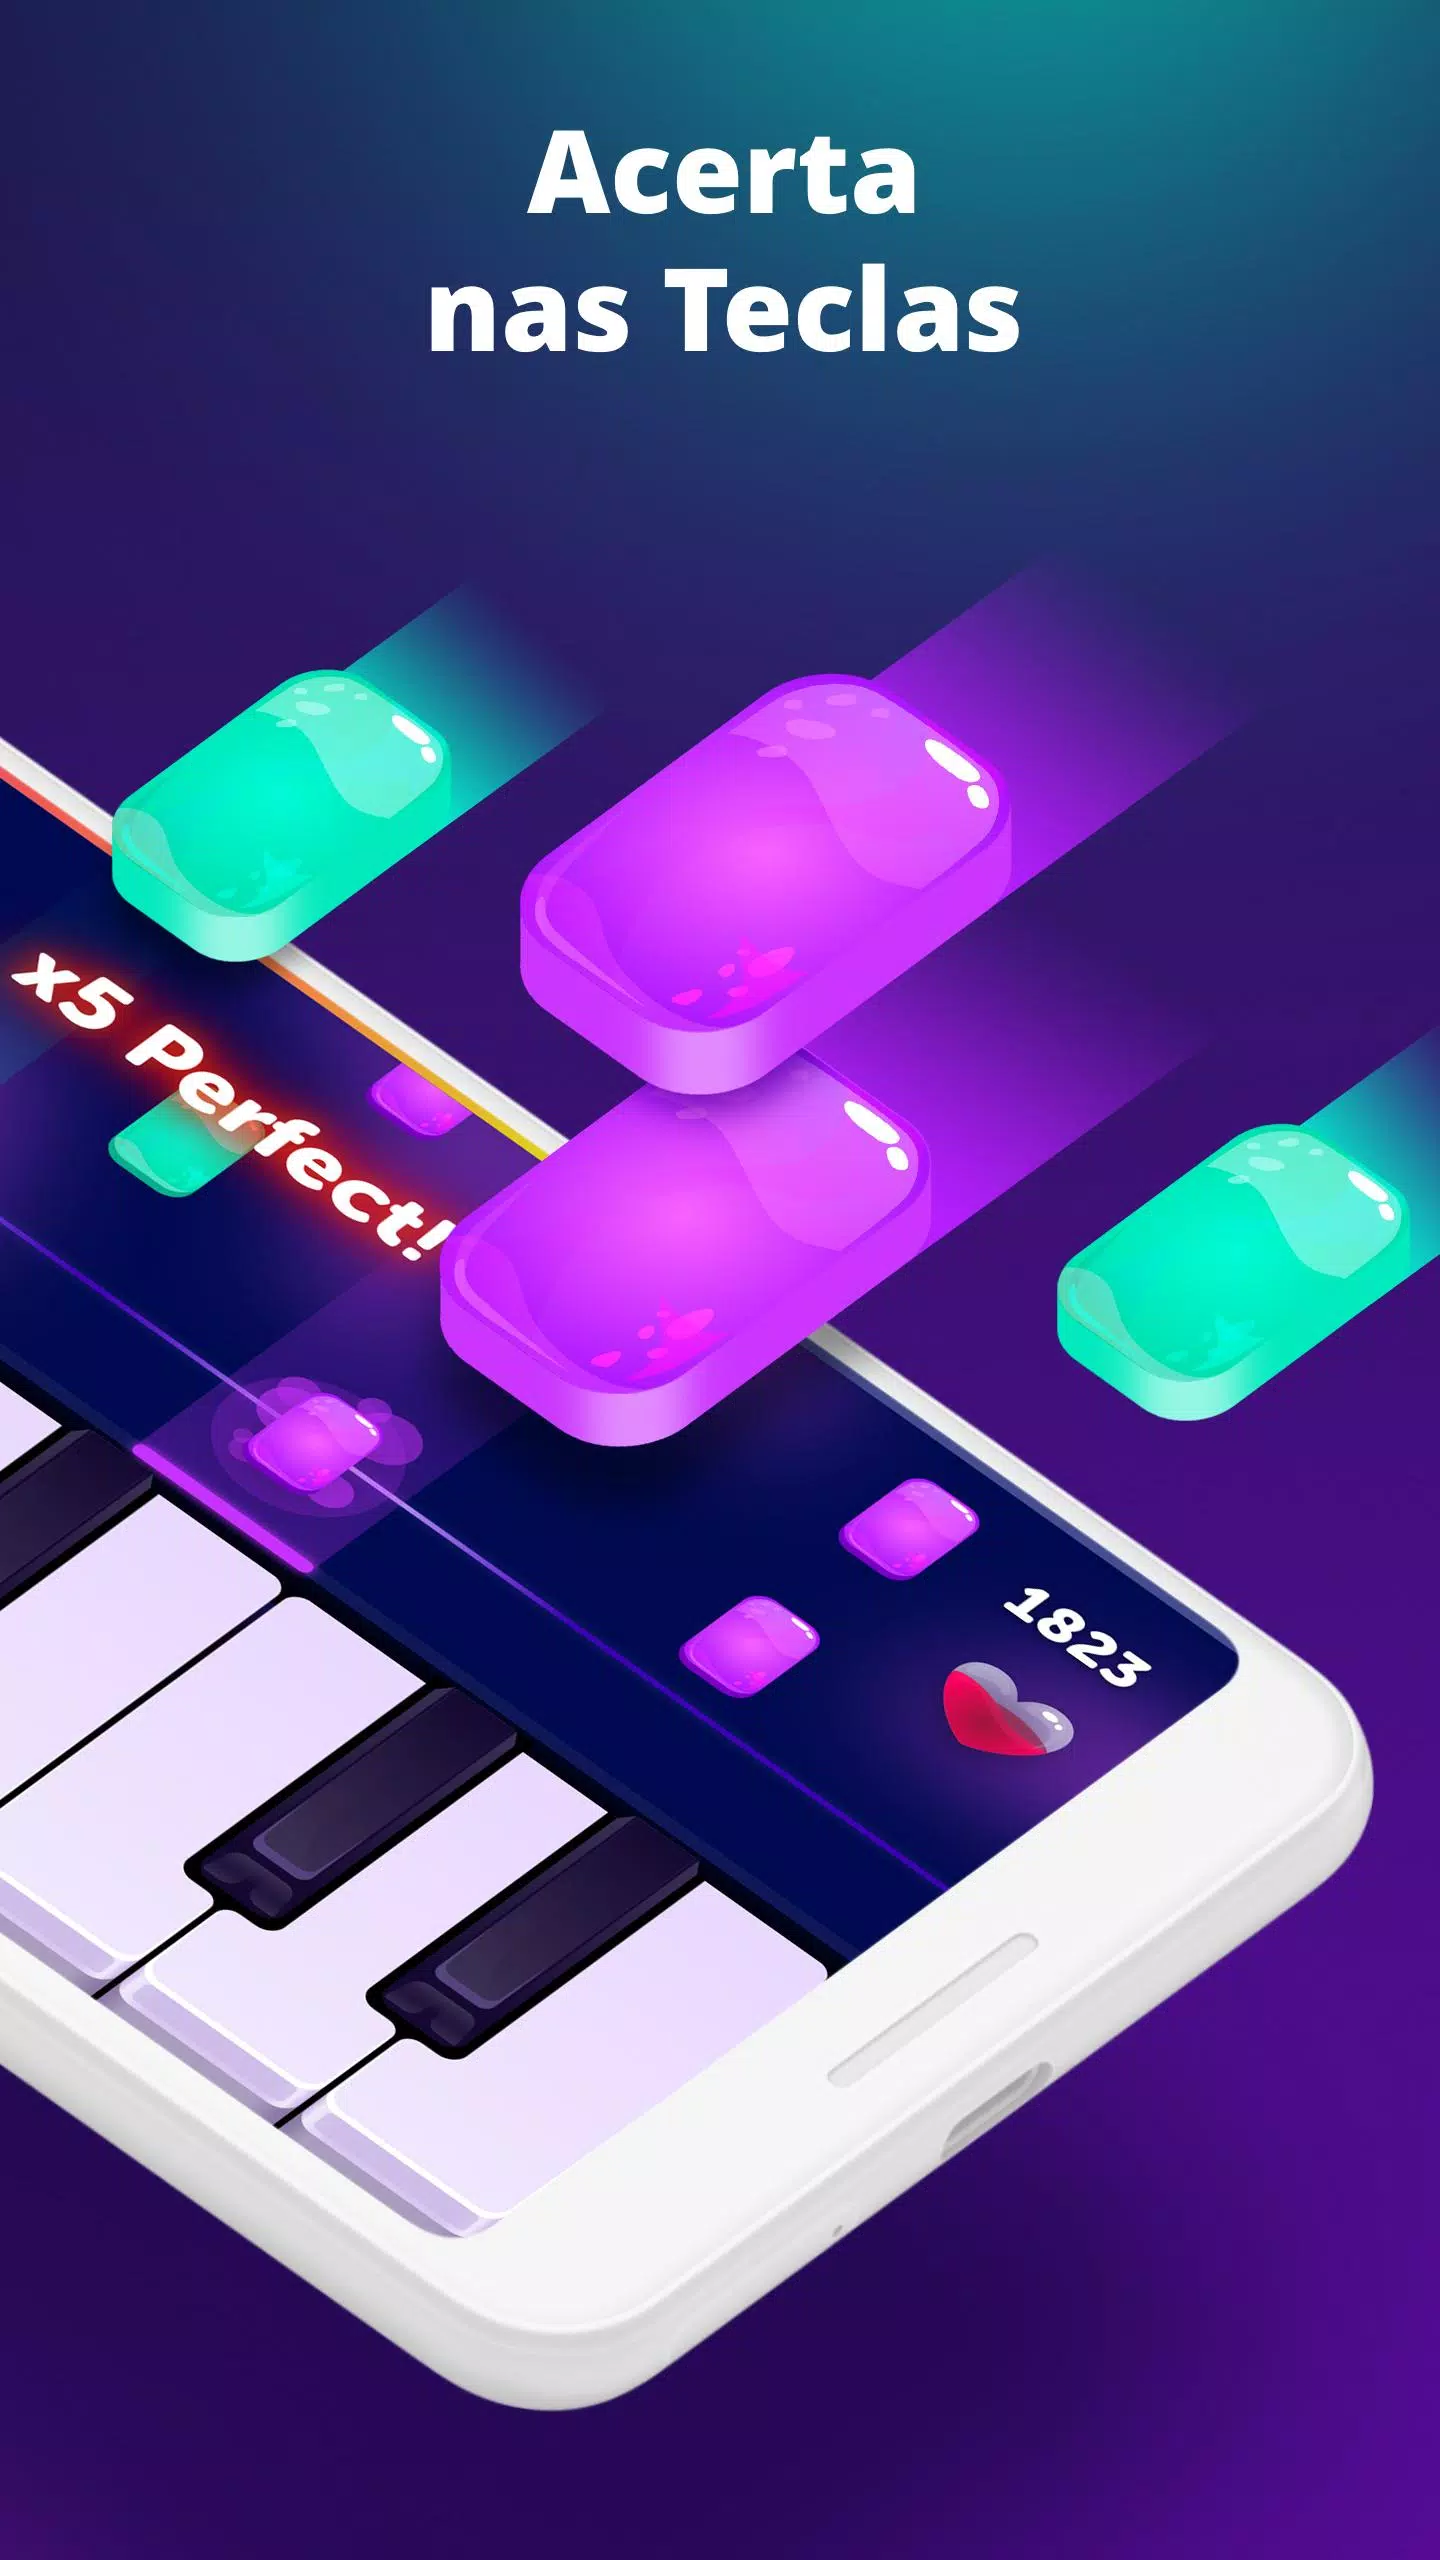 Piano Virtual, Aplicações de download da Nintendo Switch, Jogos